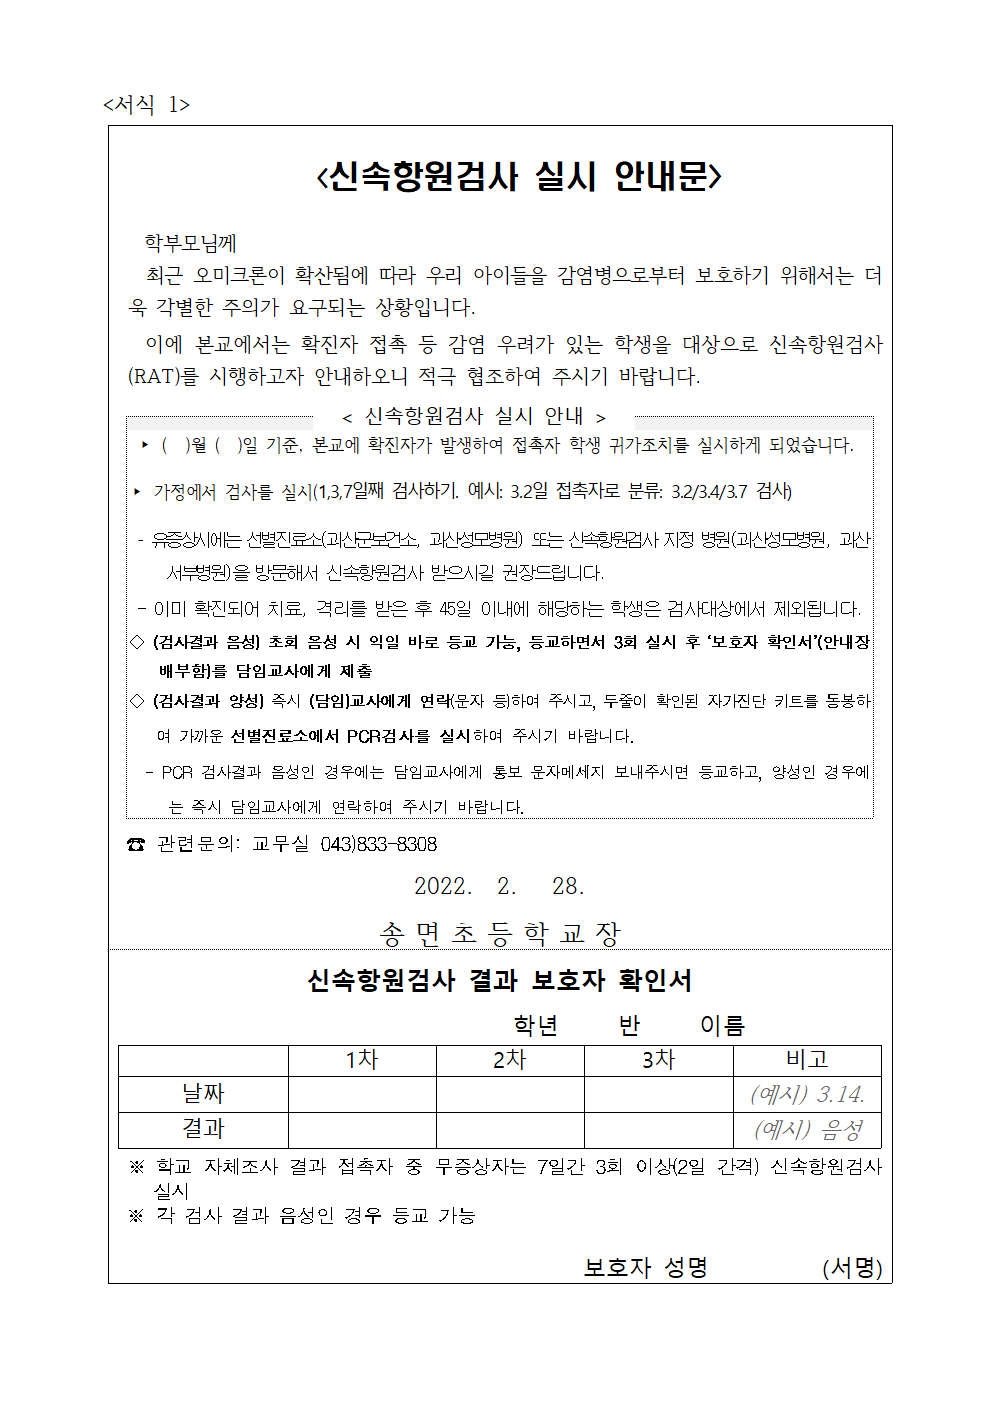 코로나19 예방을 위한 안전한 학교생활(방역관련) 안내 가정통신문003